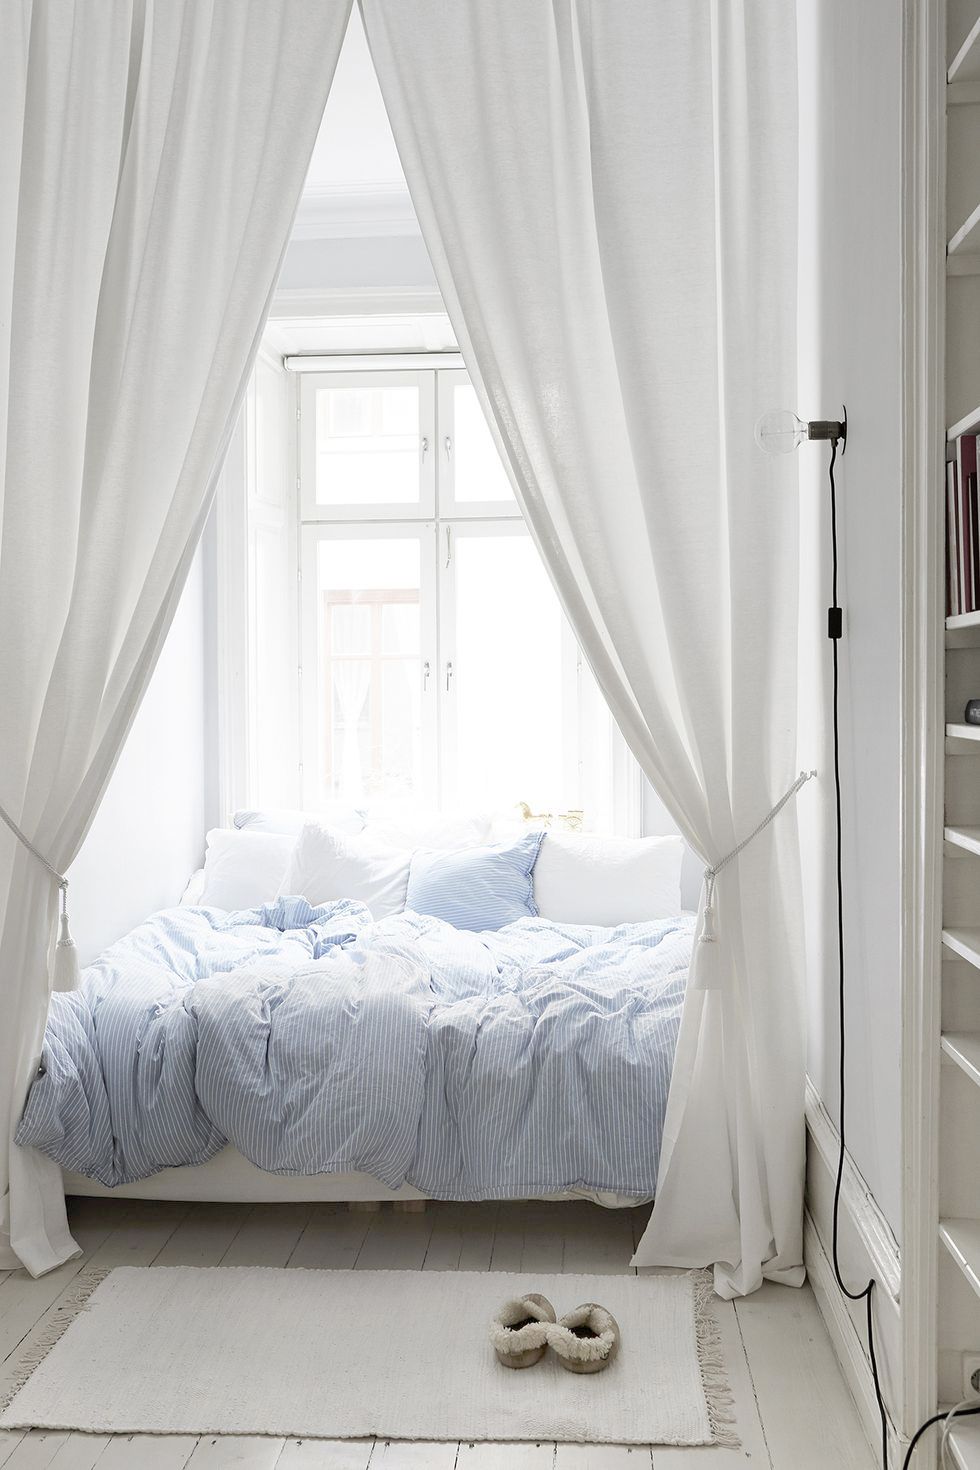 Treo rèm cửa cao đến trần quanh giường sẽ trông ấn tượng và mơ mộng hơn so với một chiếc rèm cửa cổ điển và bộ chăn ga gối đệm màu xanh nhạt trong phòng ngủ này làm tăng thêm nét vui tươi.